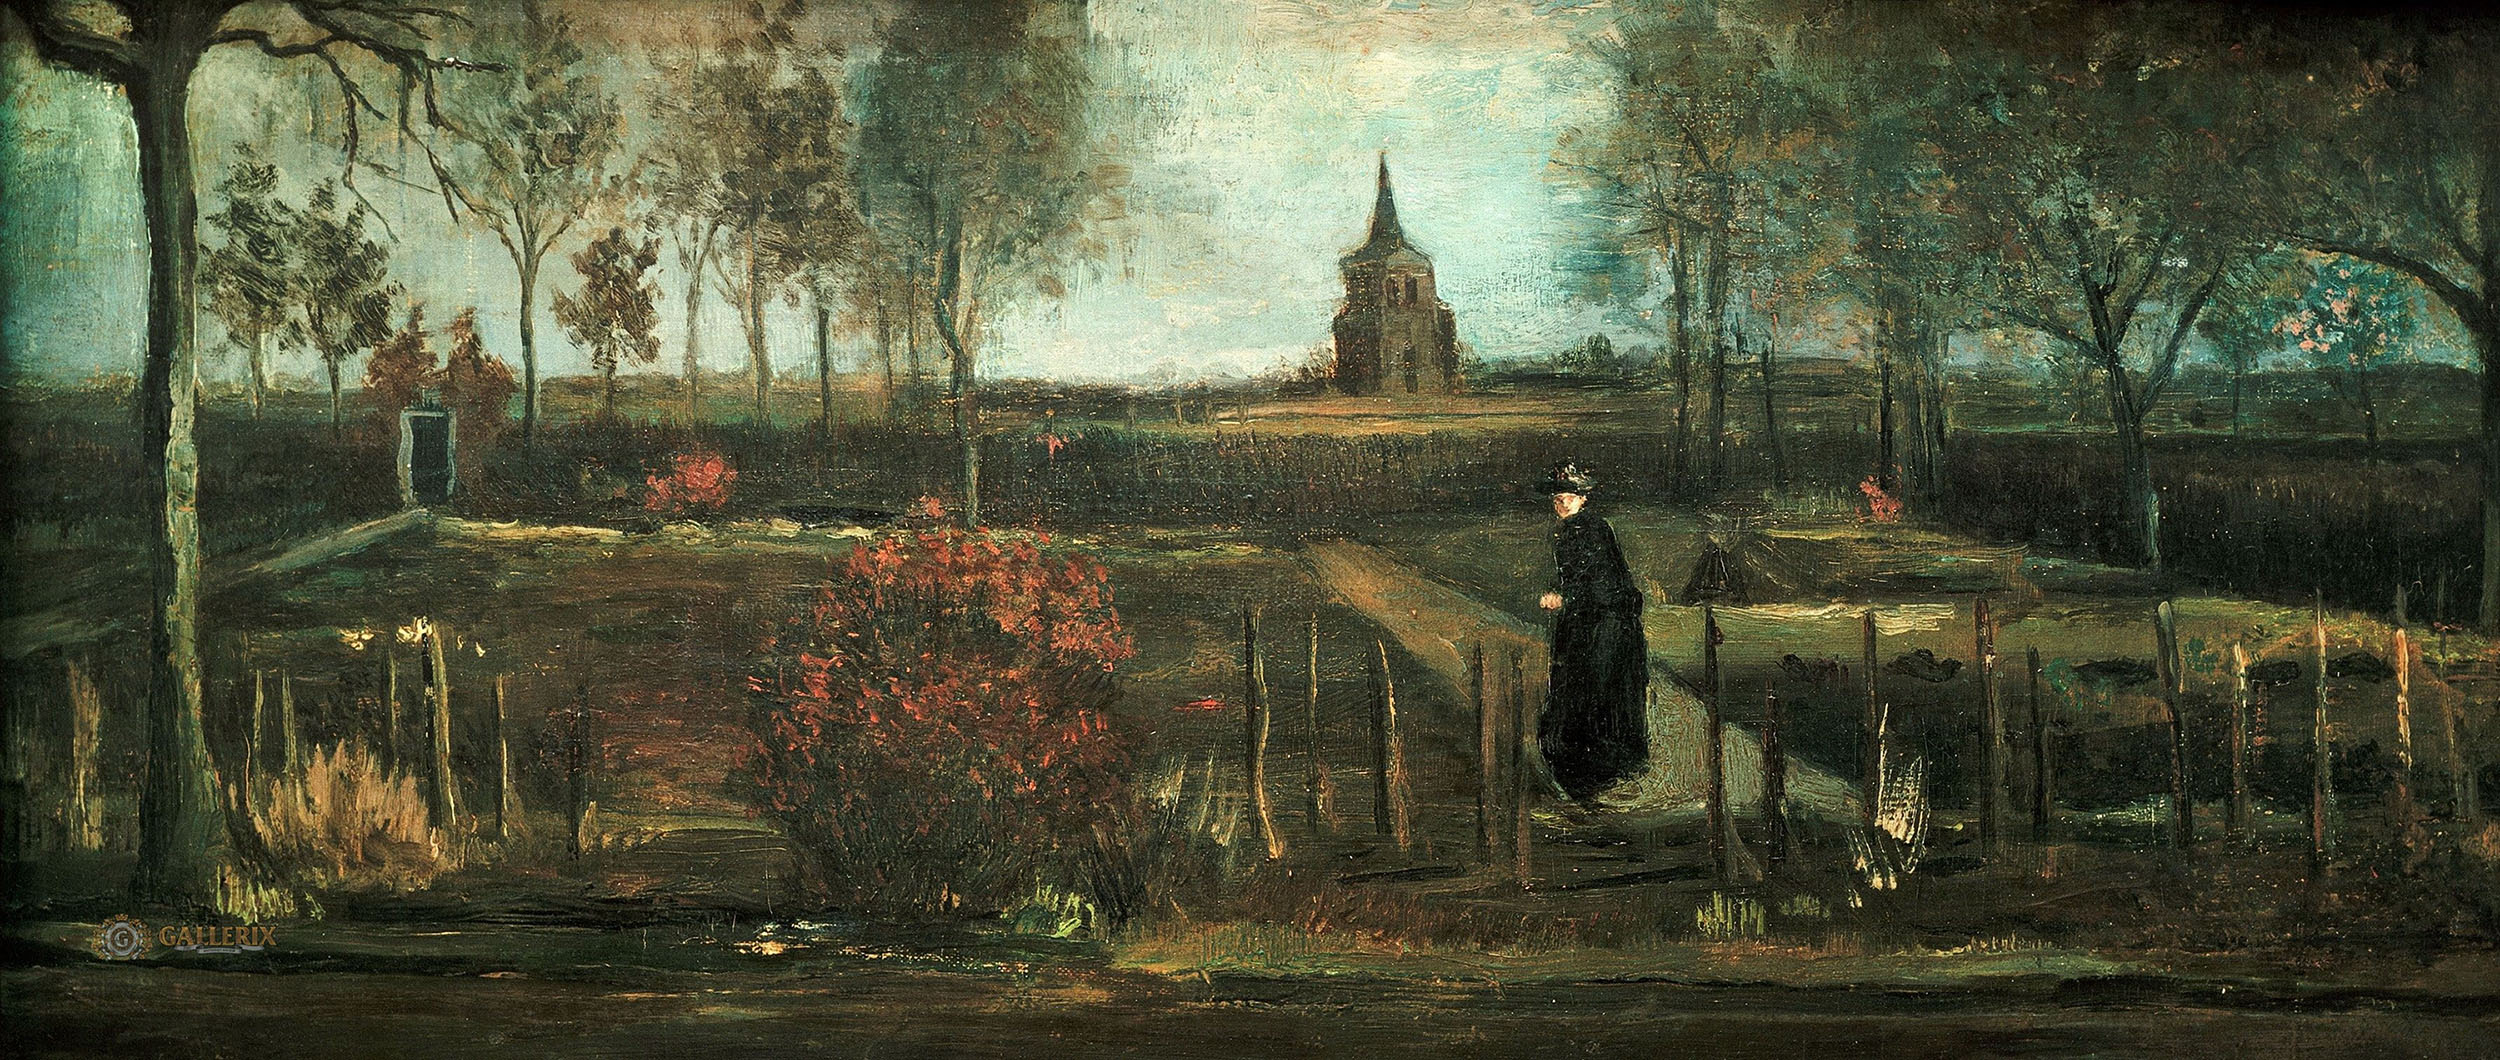 Винсент Ван Гог. "Сад священника в Нейнене, весна". 1884. Гронингенский музей, Гронинген.